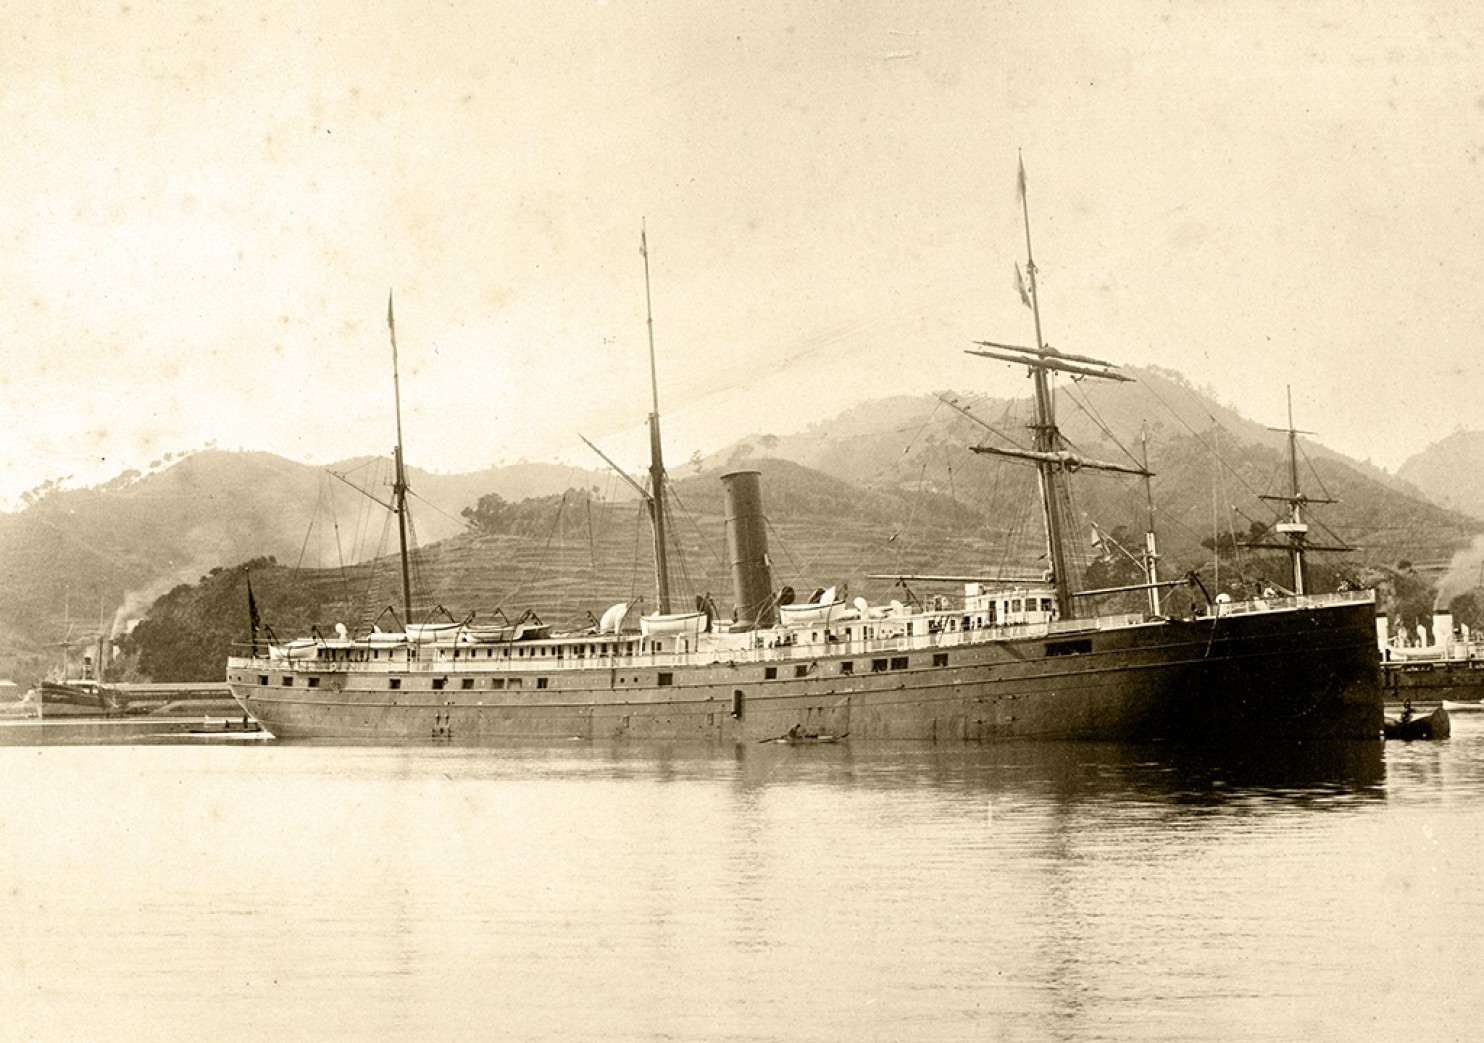 SS City of Rio de Janeiro (San Francisco Maritime National Historical Park, NOAA)